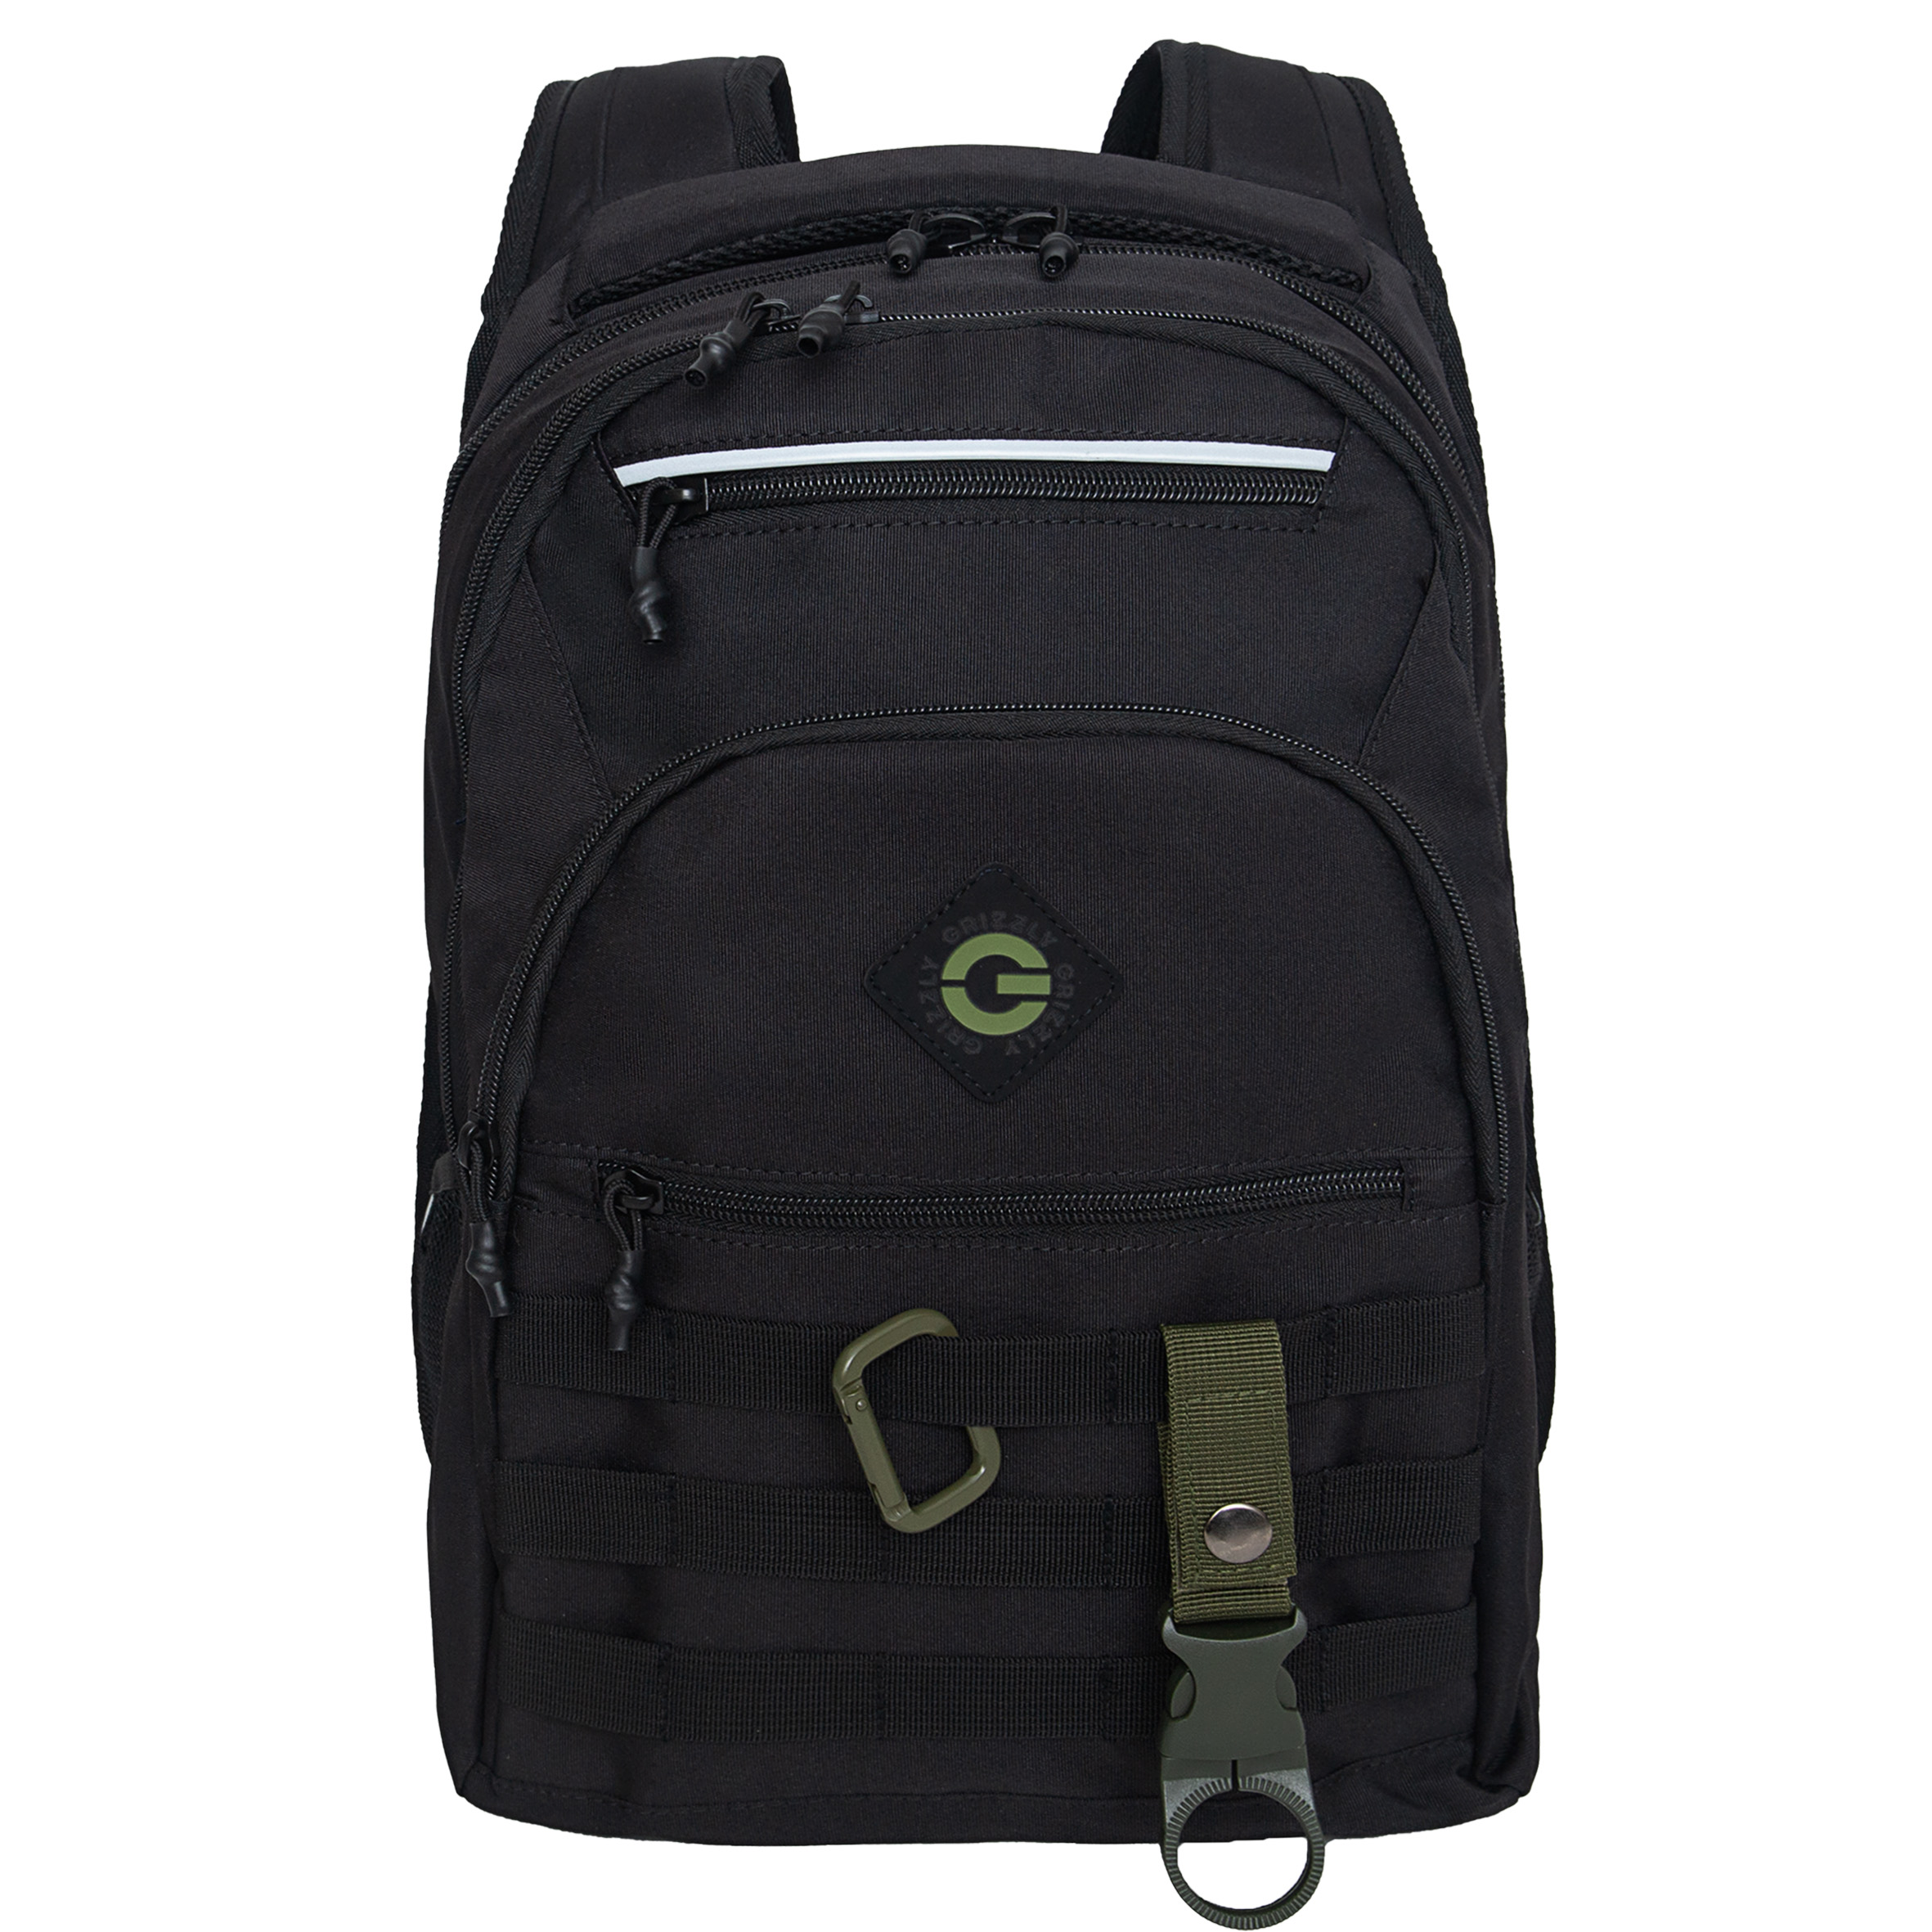 Рюкзак GRIZZLY для школьников и студентов RU-431-3/2 черный, хаки